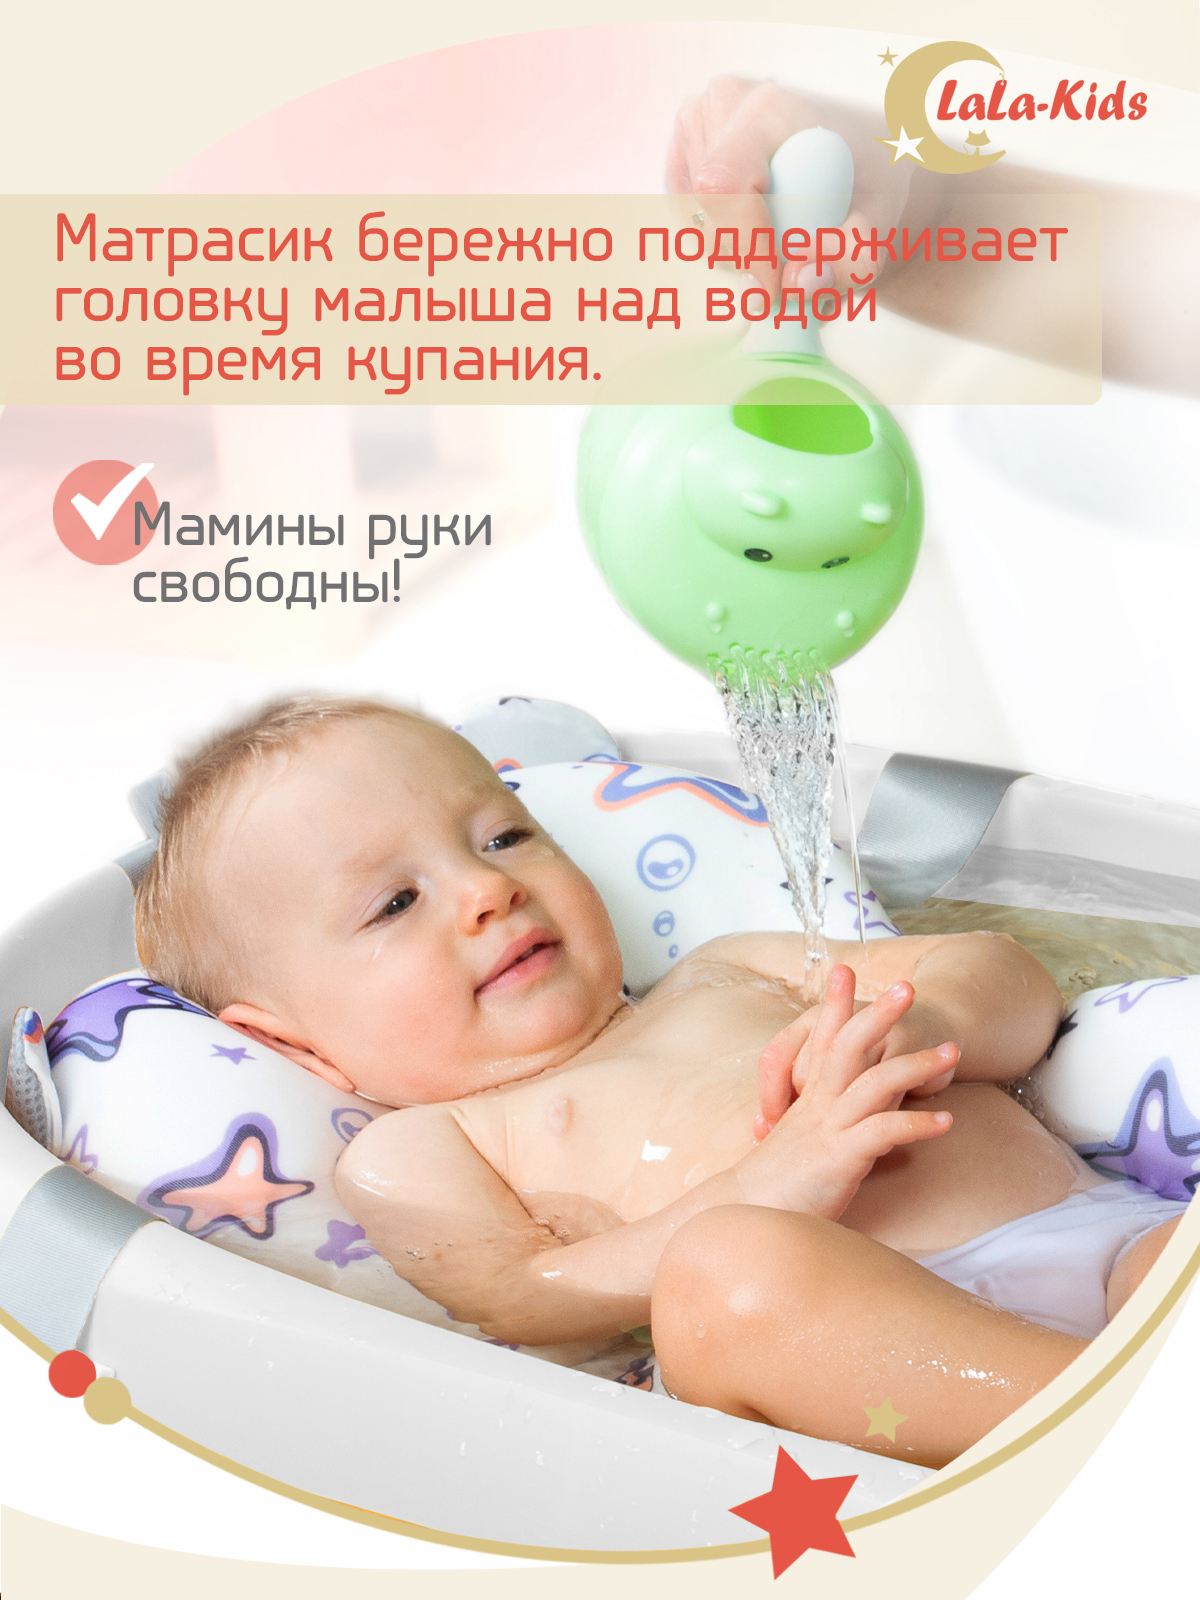 Детская ванночка с термометром LaLa-Kids складная с матрасиком фиолетовым в комплекте - фото 11